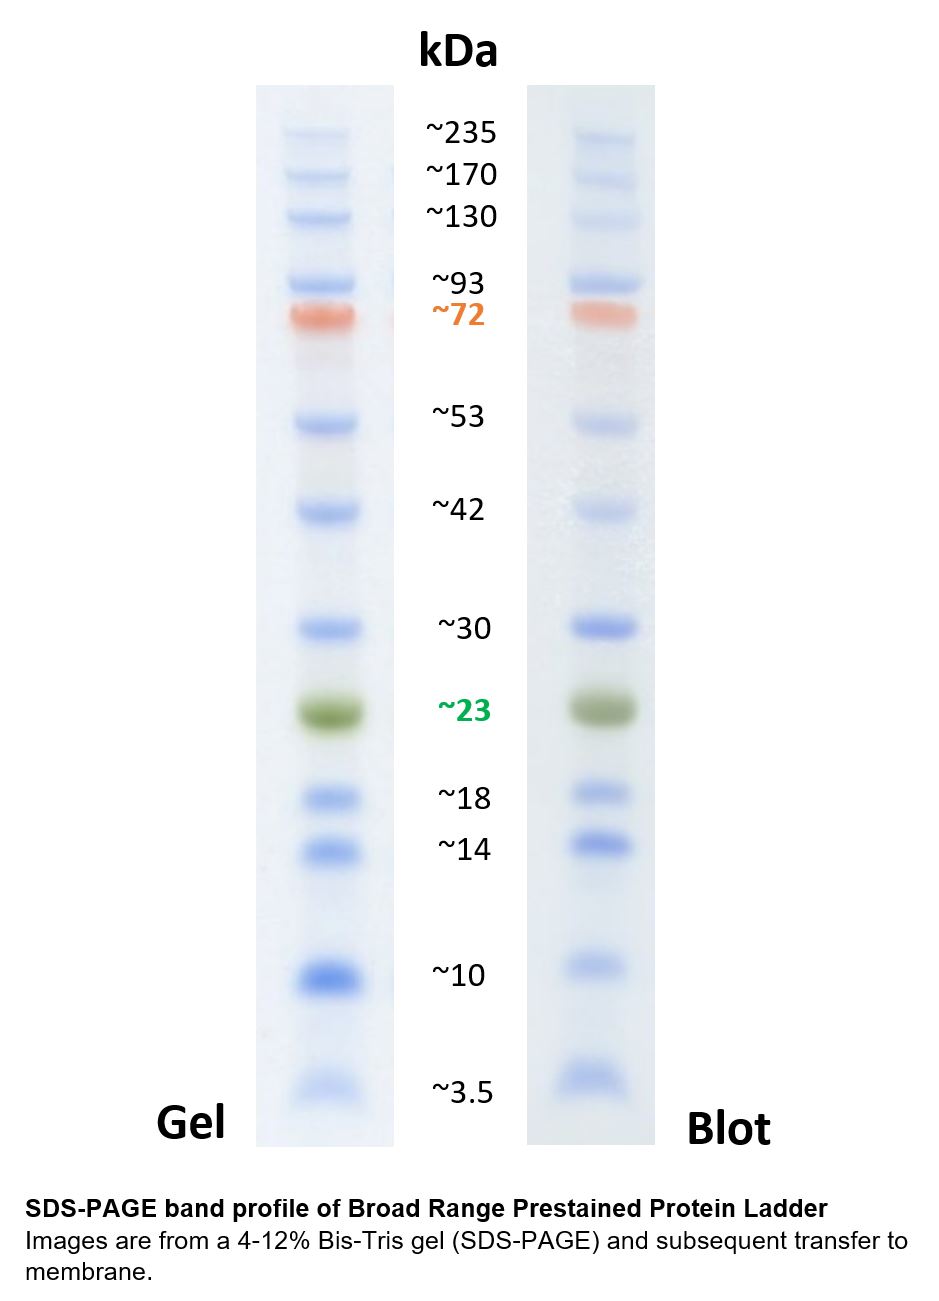 宽范围分子量预染蛋白质标记在4-12% Bis-Tris 凝胶电泳和随后转移到膜上的条带分布图谱。<br>